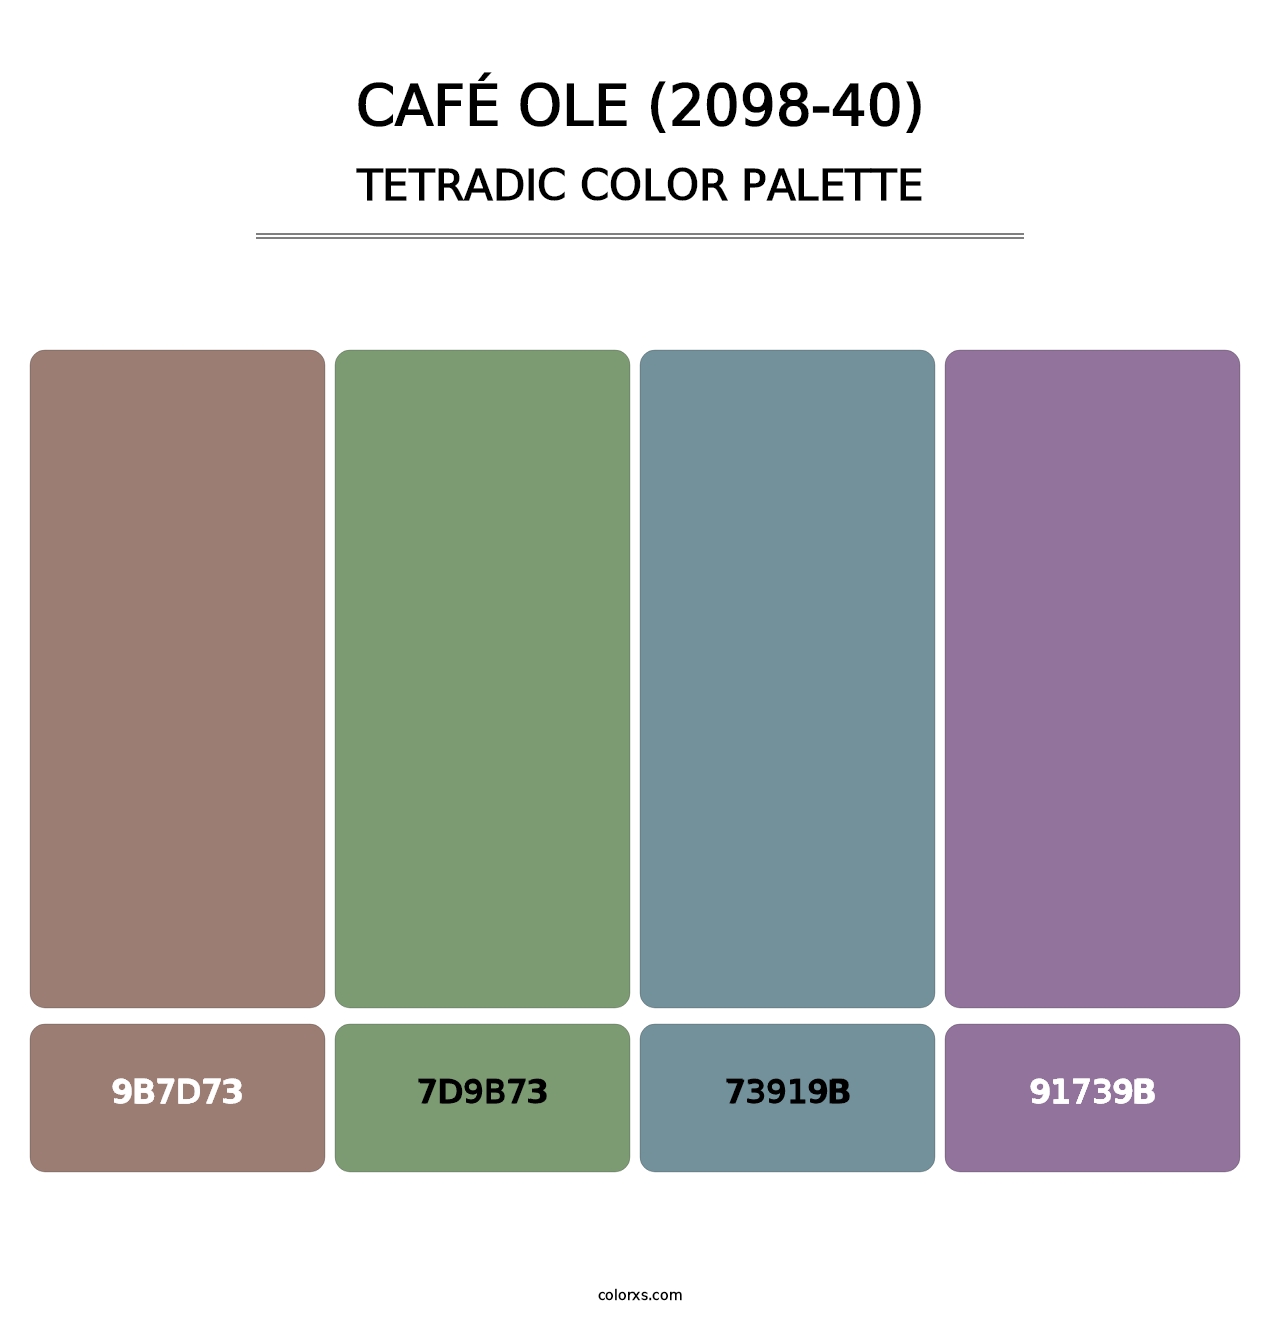 Café Ole (2098-40) - Tetradic Color Palette